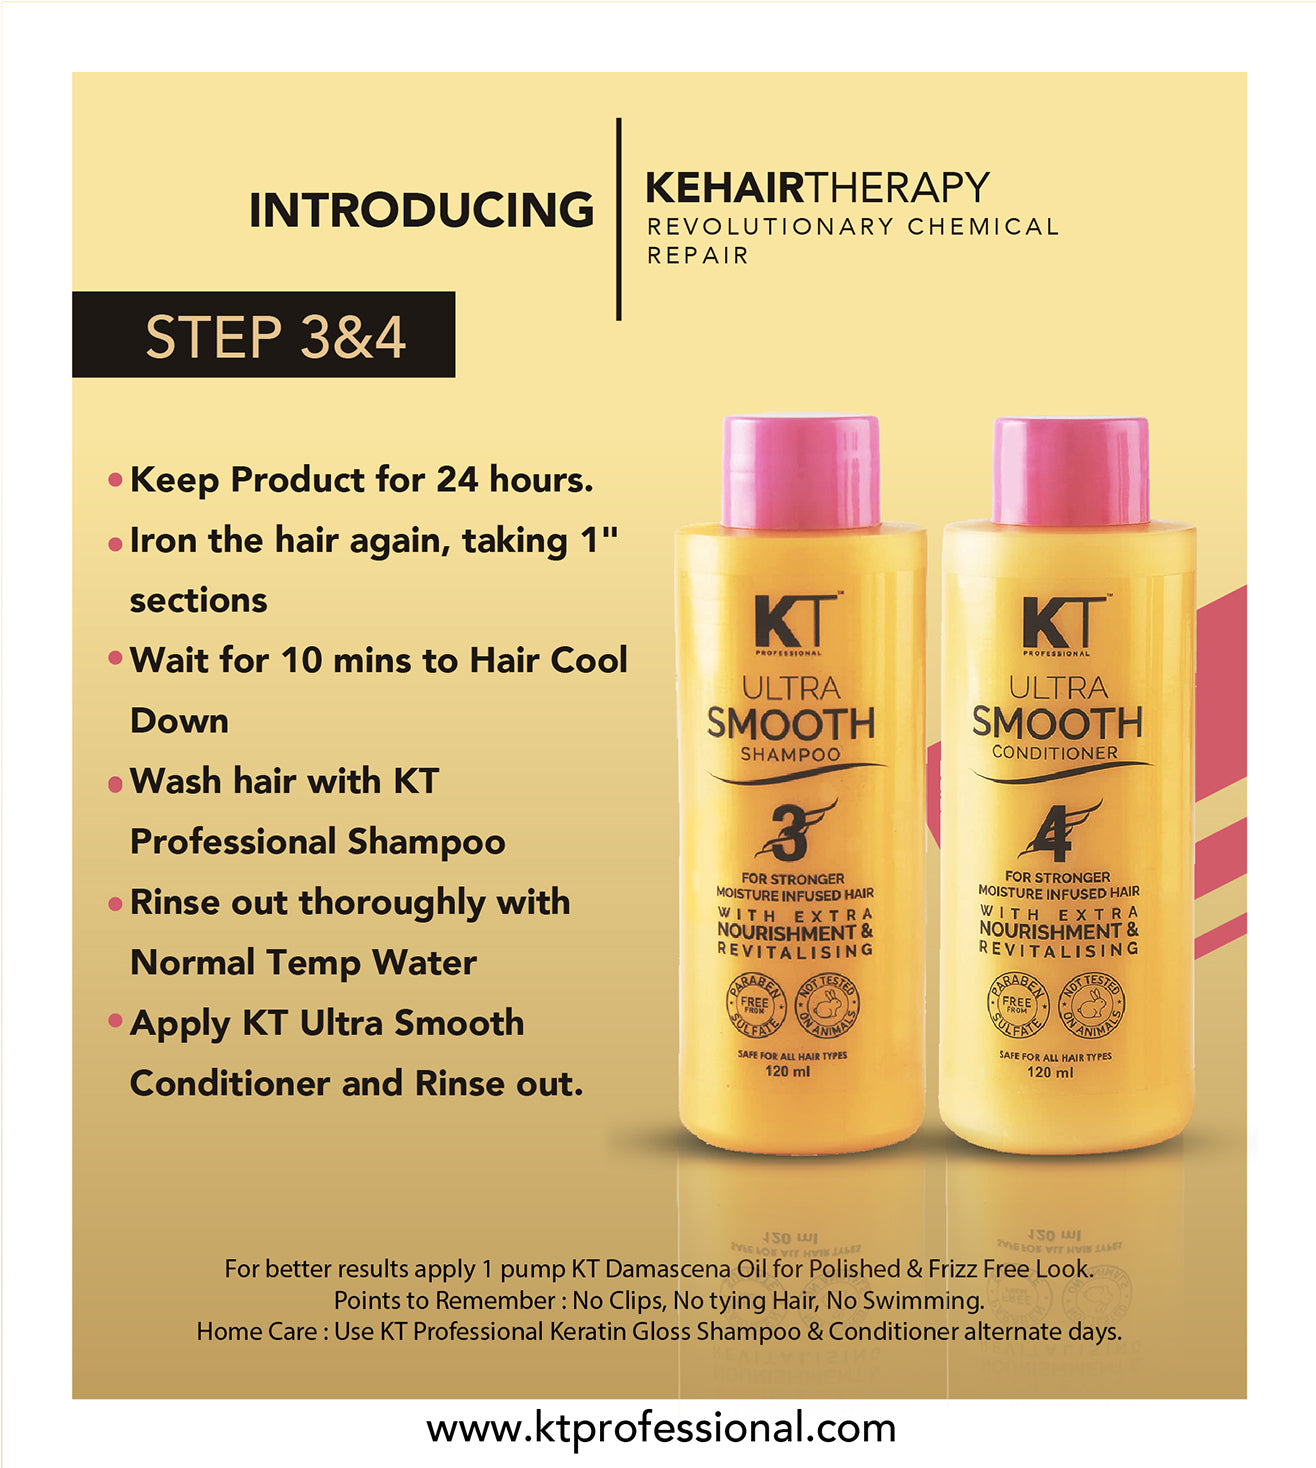 KEHAIRTHERAPY KT Professional Home Keratin CYSTEINE PLUS Starter Kit (480ml)